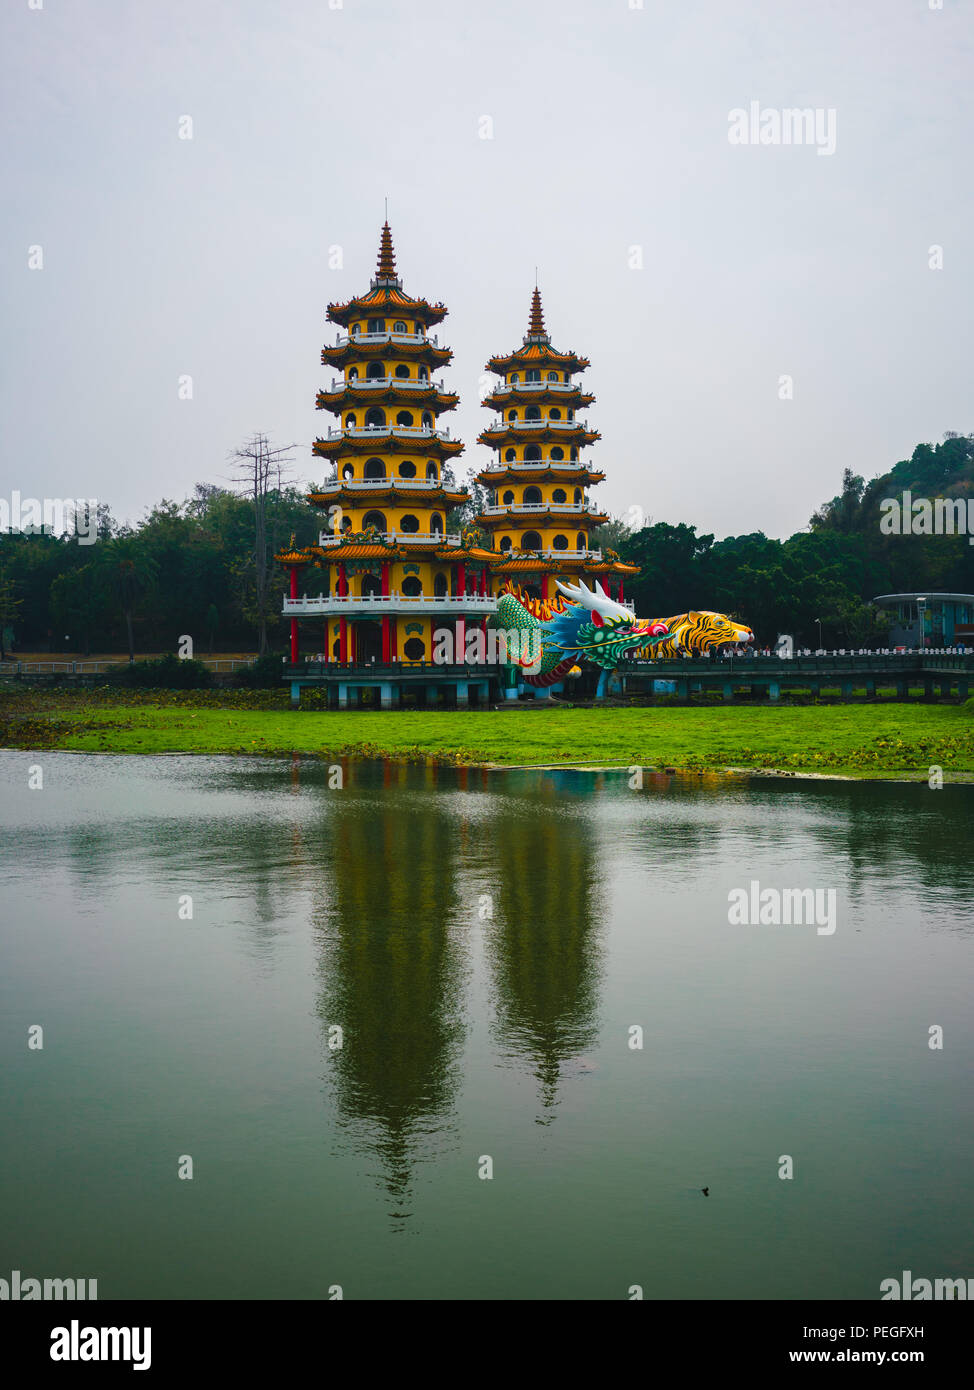 Dragon and Tiger Pagodas at lotus pond lake in Kaohsiung Taiwan Stock Photo